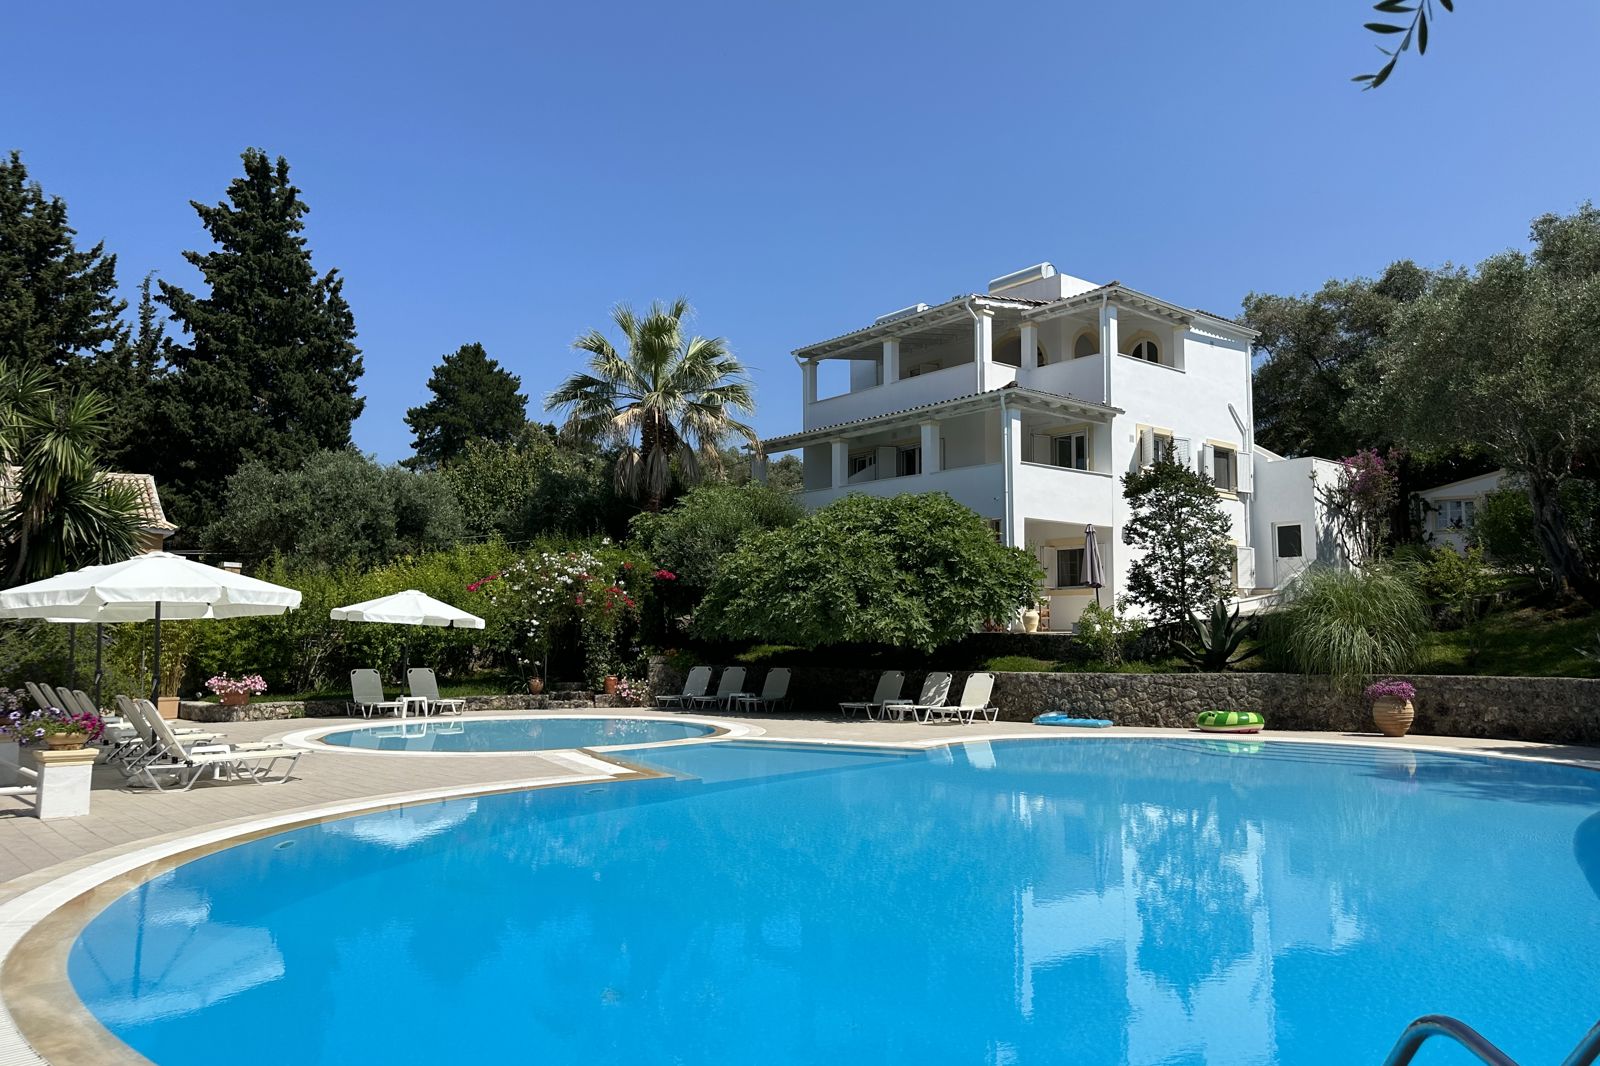 Maison Metel - Griekenland - Corfu - Kontokali